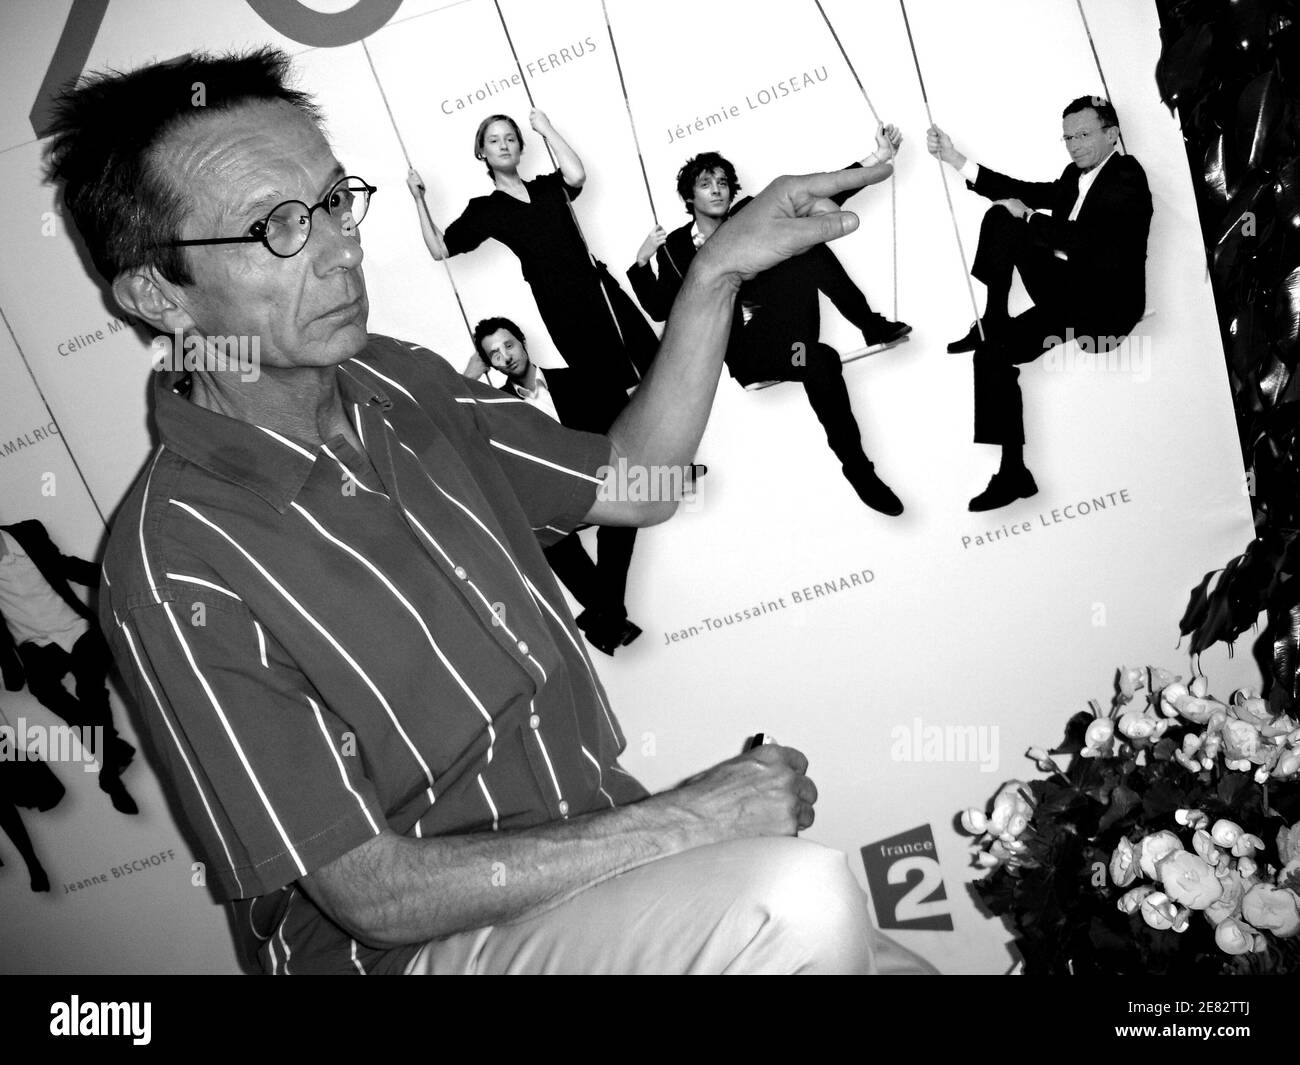 Regista e produttore Patrice Leconte durante il 60° festival internazionale del cinema a Cannes, in Francia, il 17 maggio 2007. Foto di Leo/ABACAPRESS.COM Foto Stock